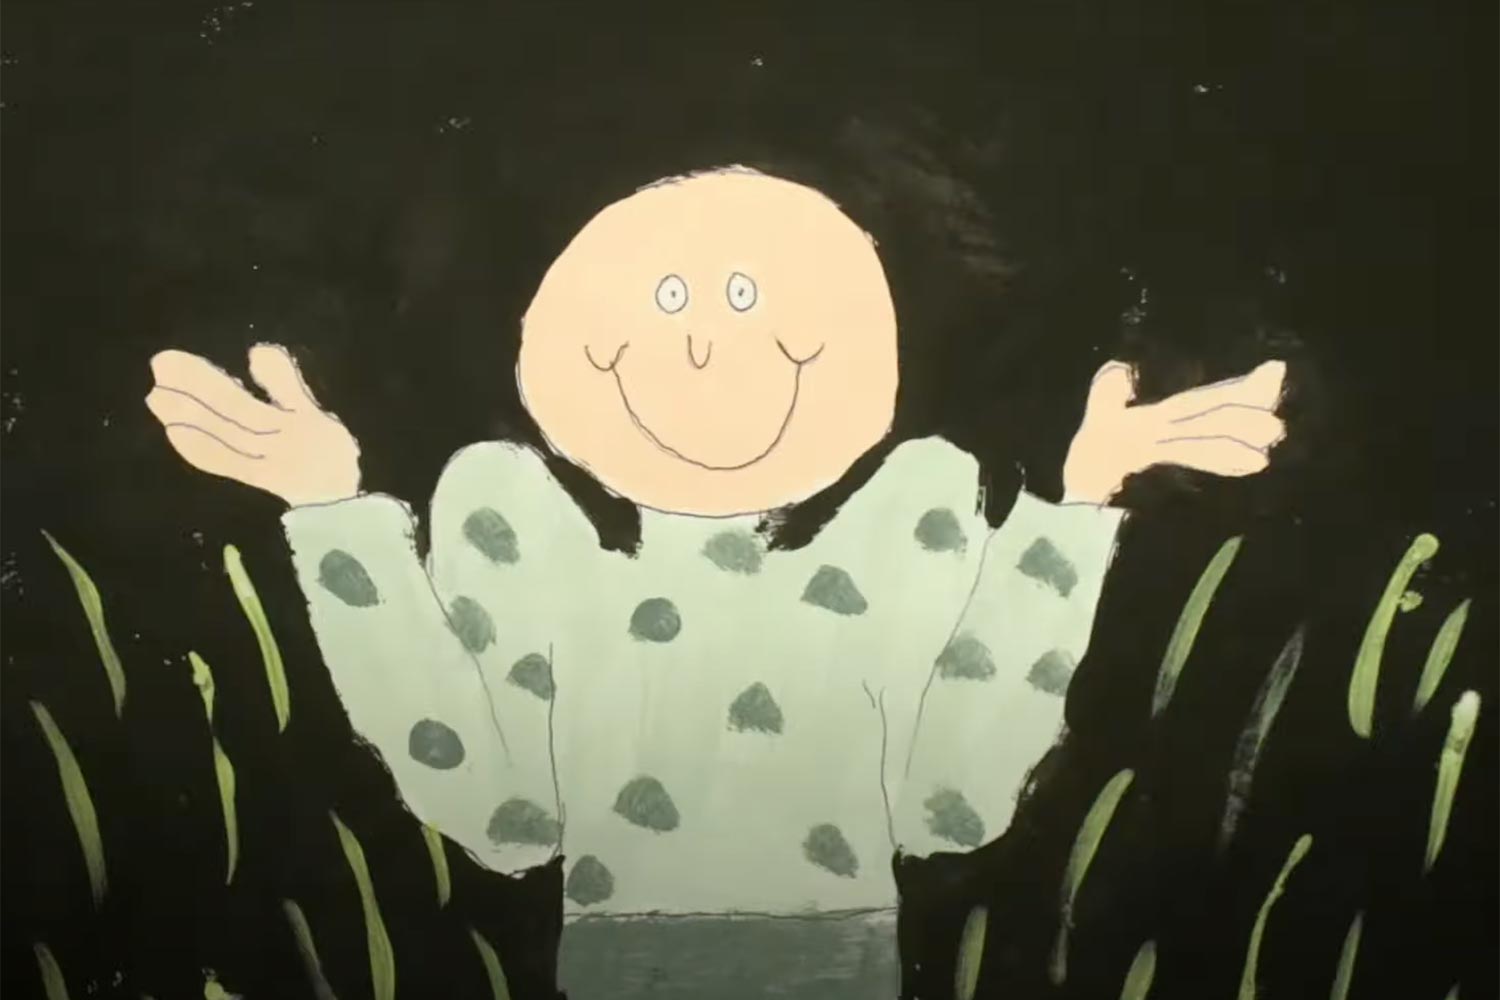 animation still from Lunar Vacation's Shrug video